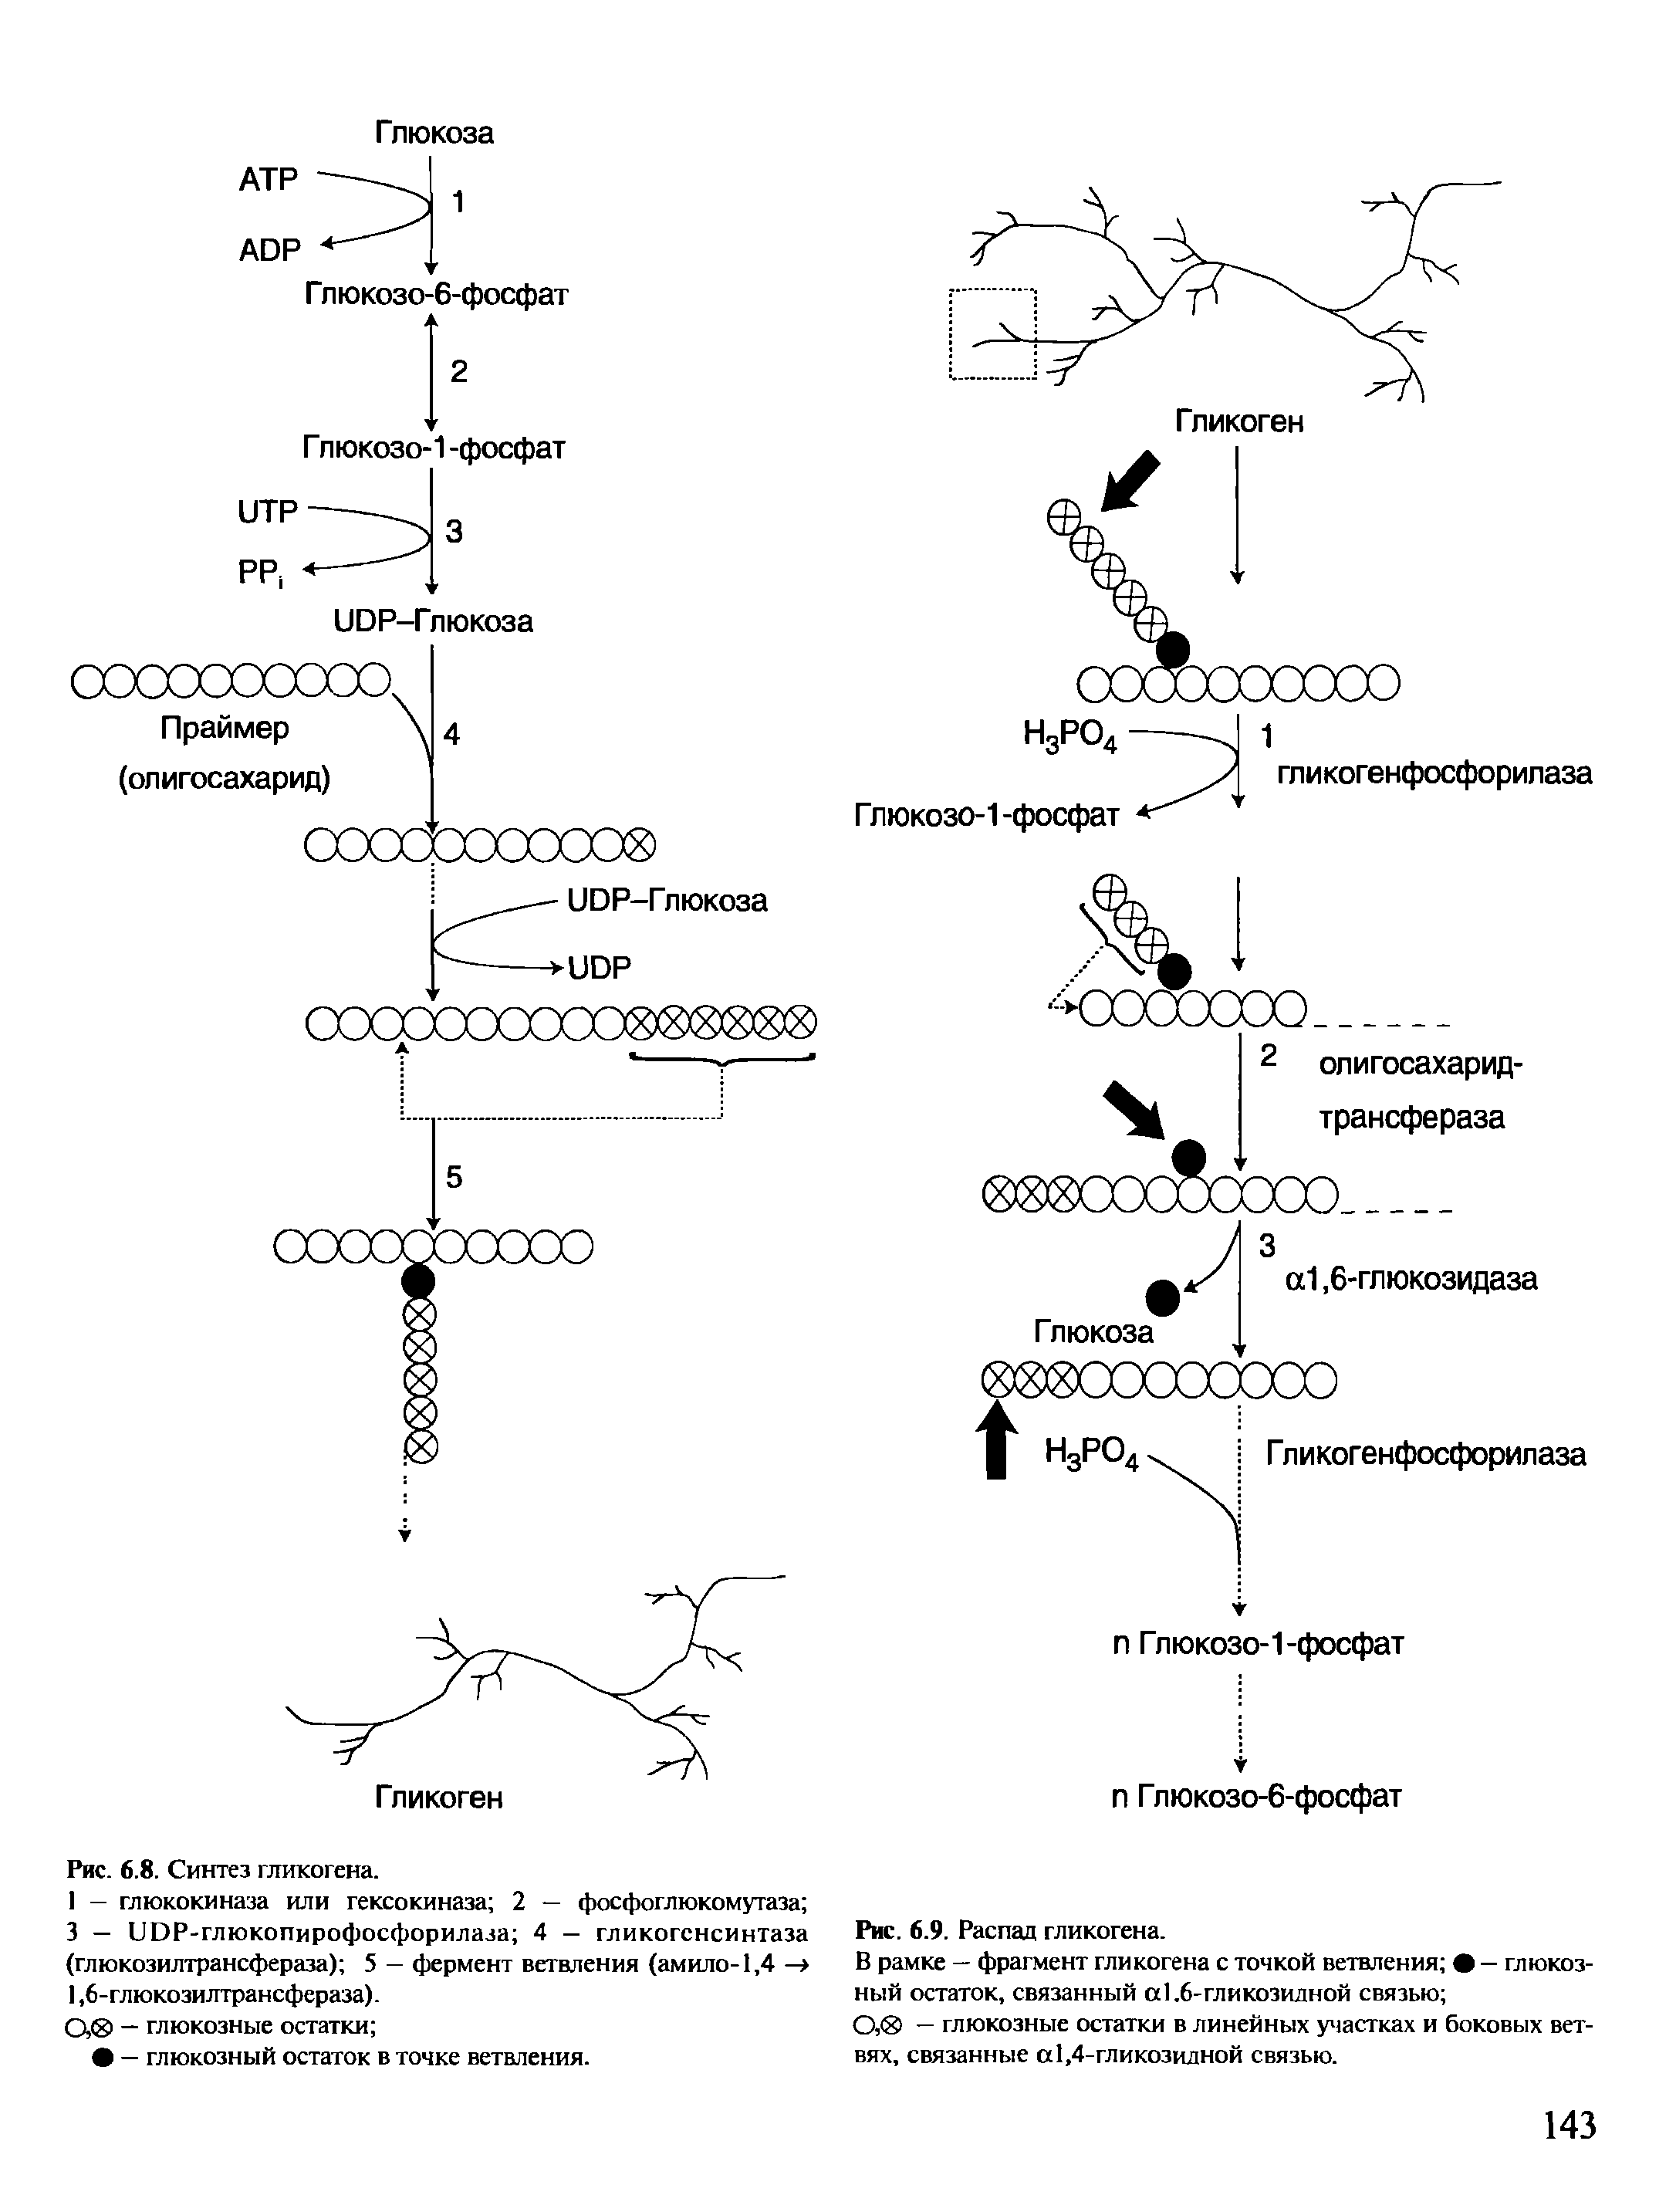 Биосинтез гликогена